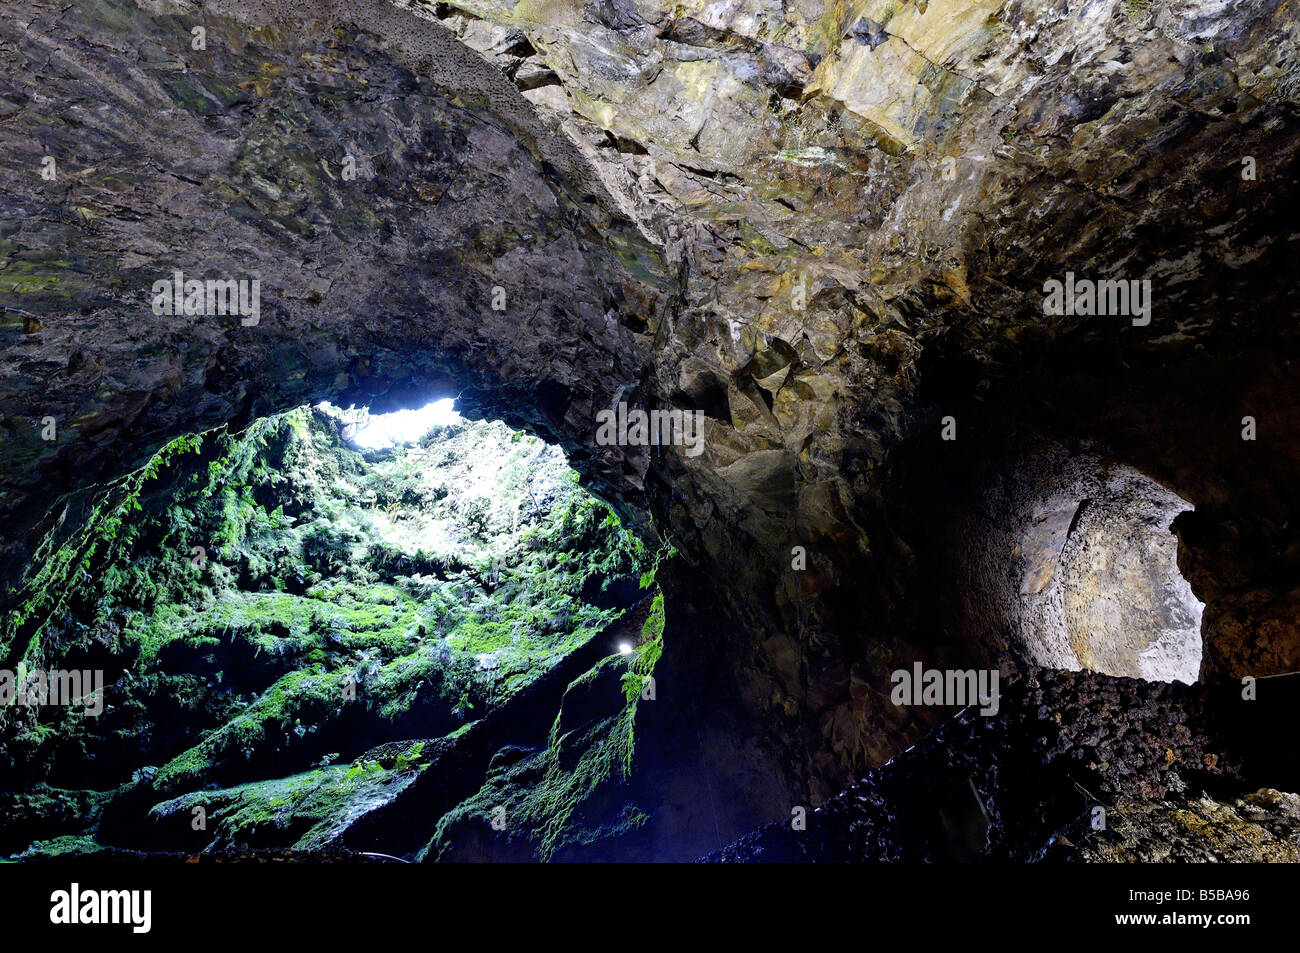 Algar do Carvao Caves, Terceira Island, Azores, Portugal, Europe Stock Photo